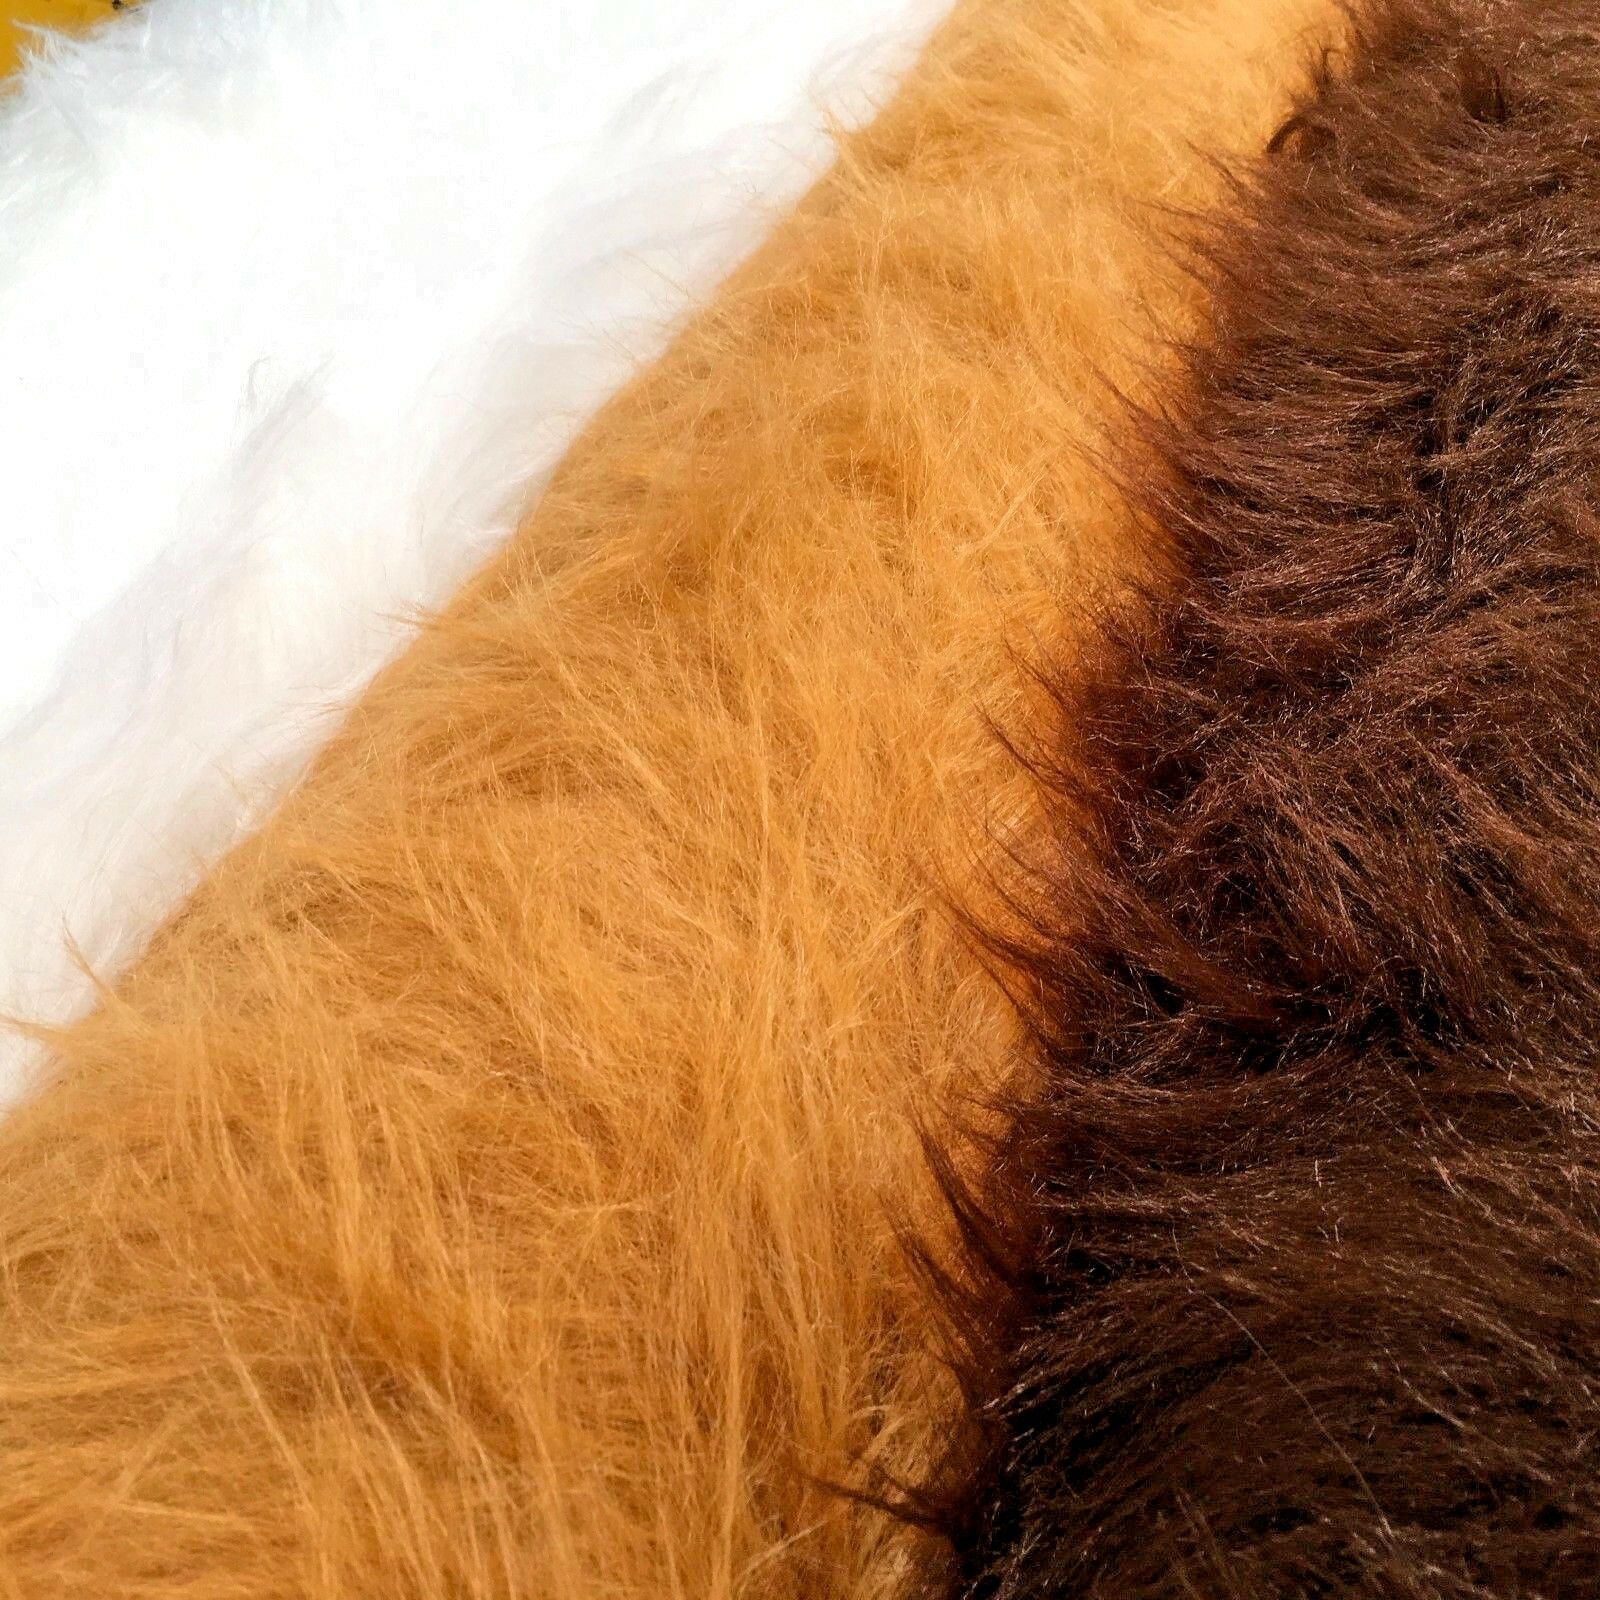 Pelliccia sintetica tinta unita pelo lungo 75 mm ideale per abbigliamento,  cucce per animali domestici 58 pollici di larghezza - Midland Textiles